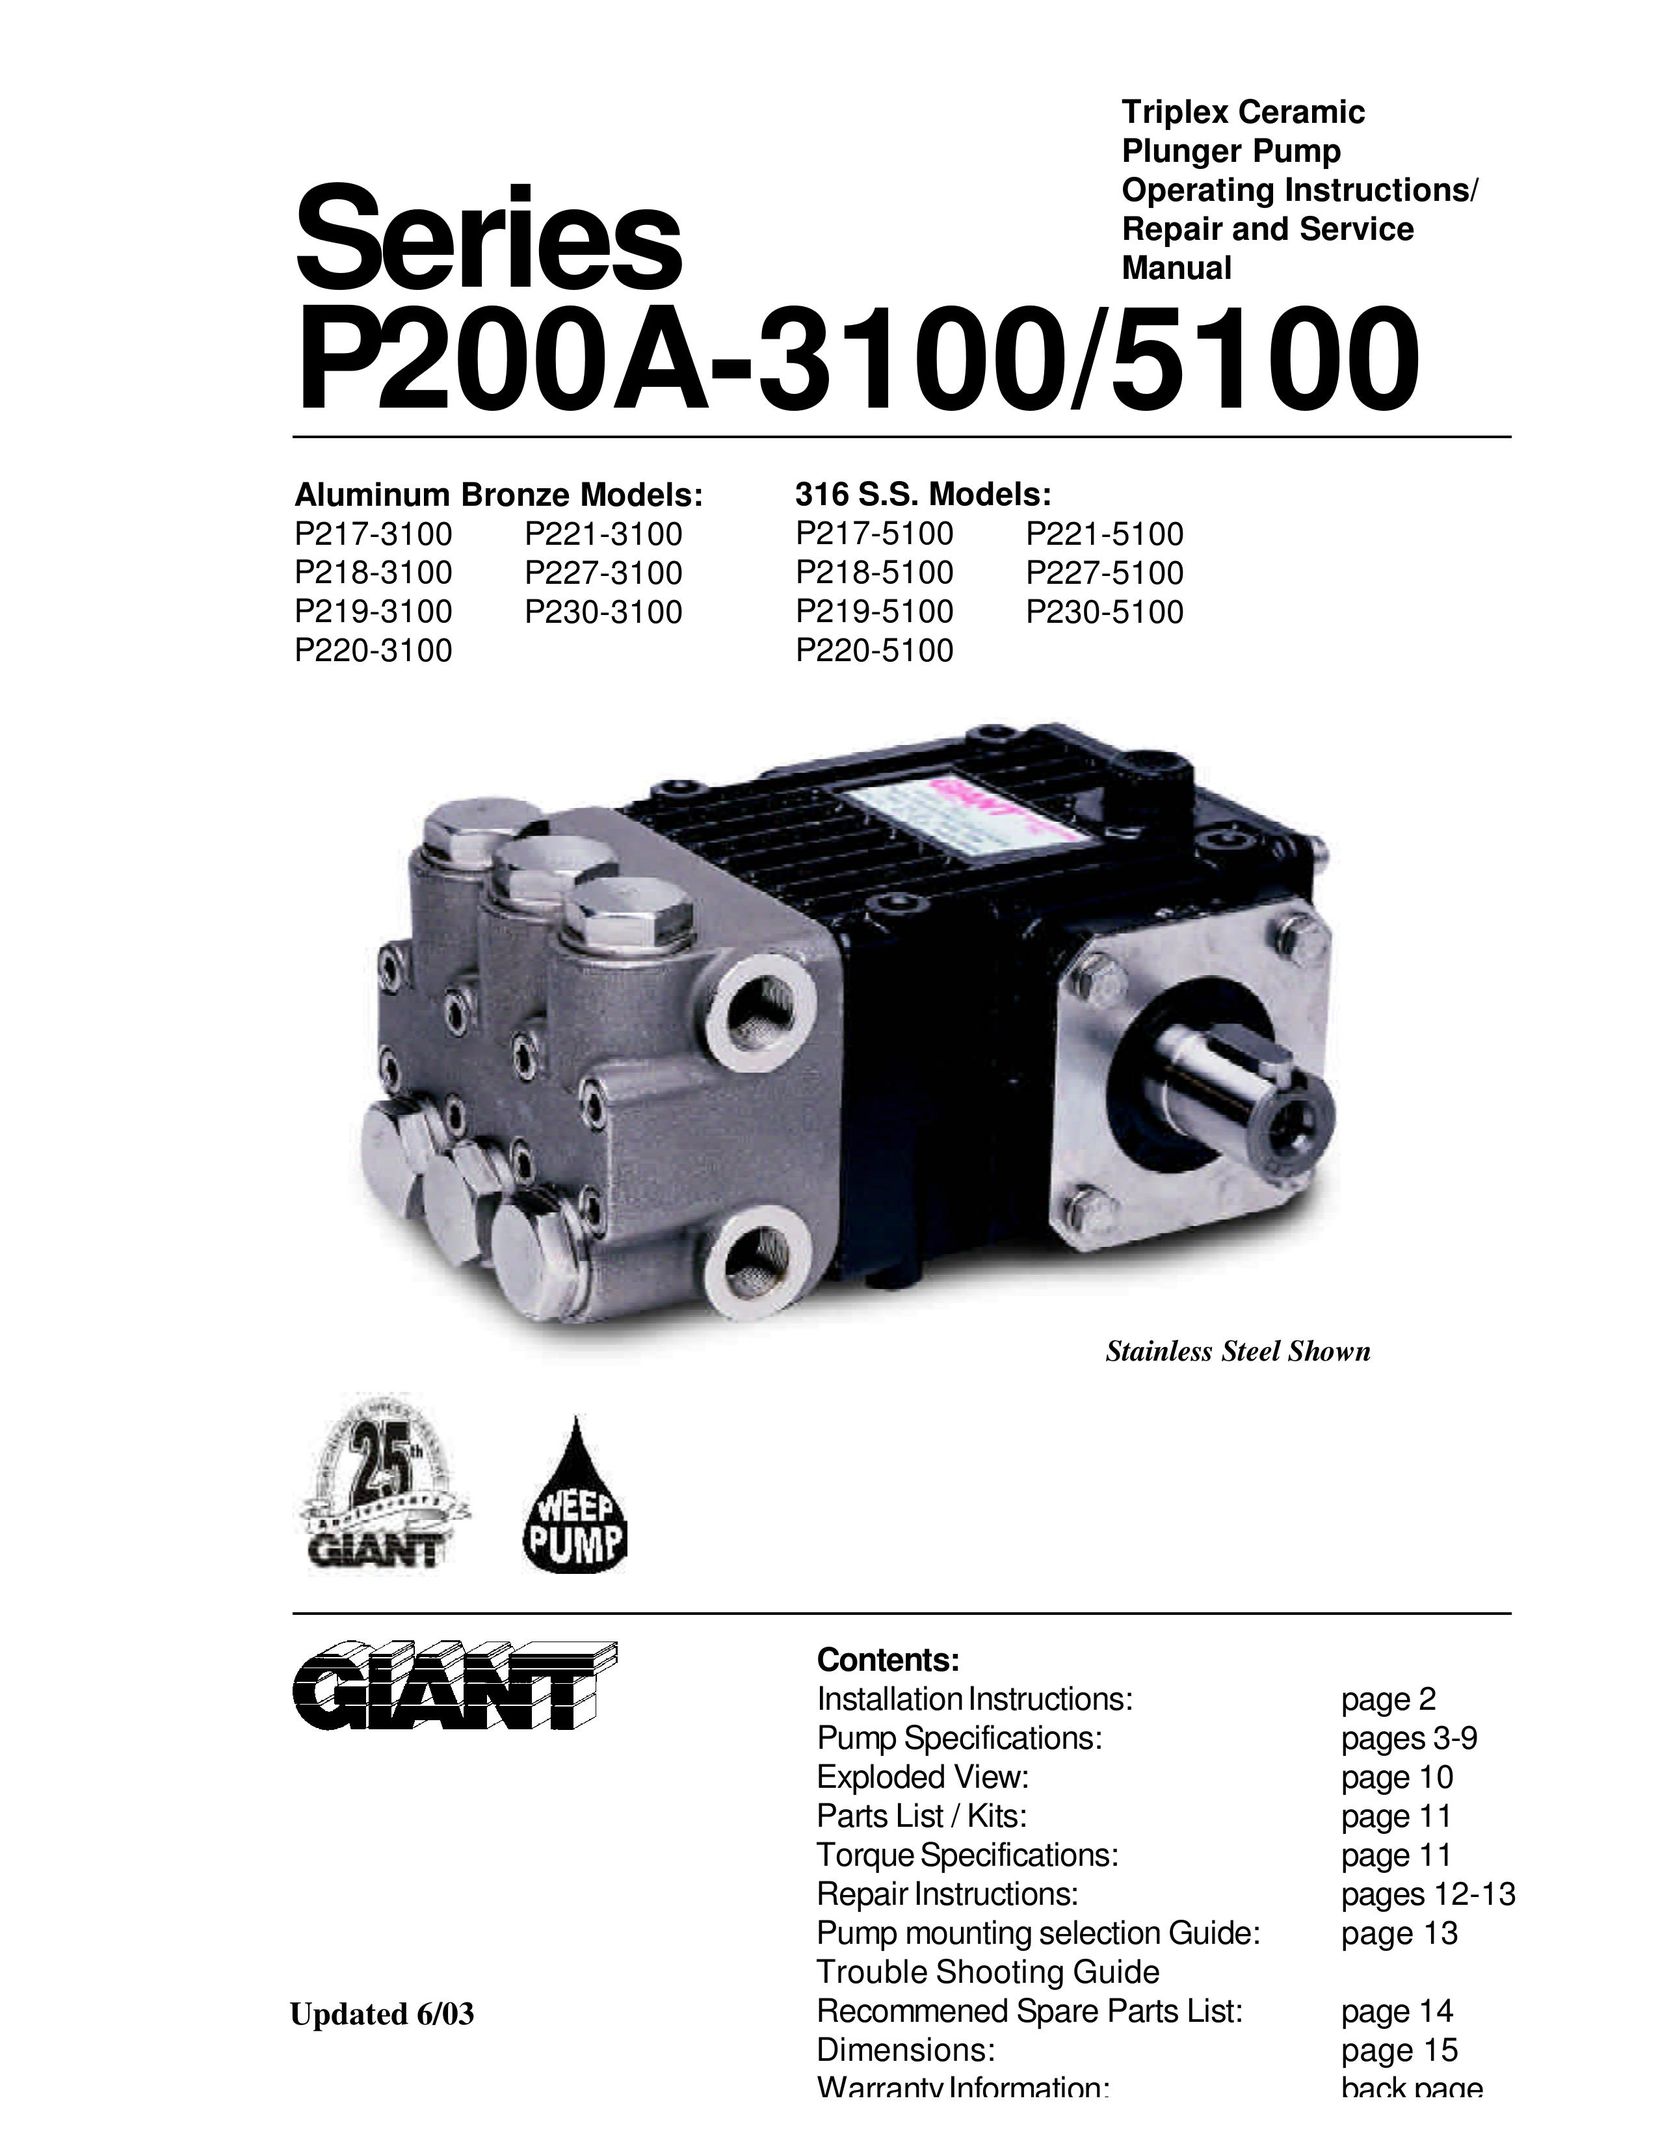 Giant P218-5100 Water Pump User Manual